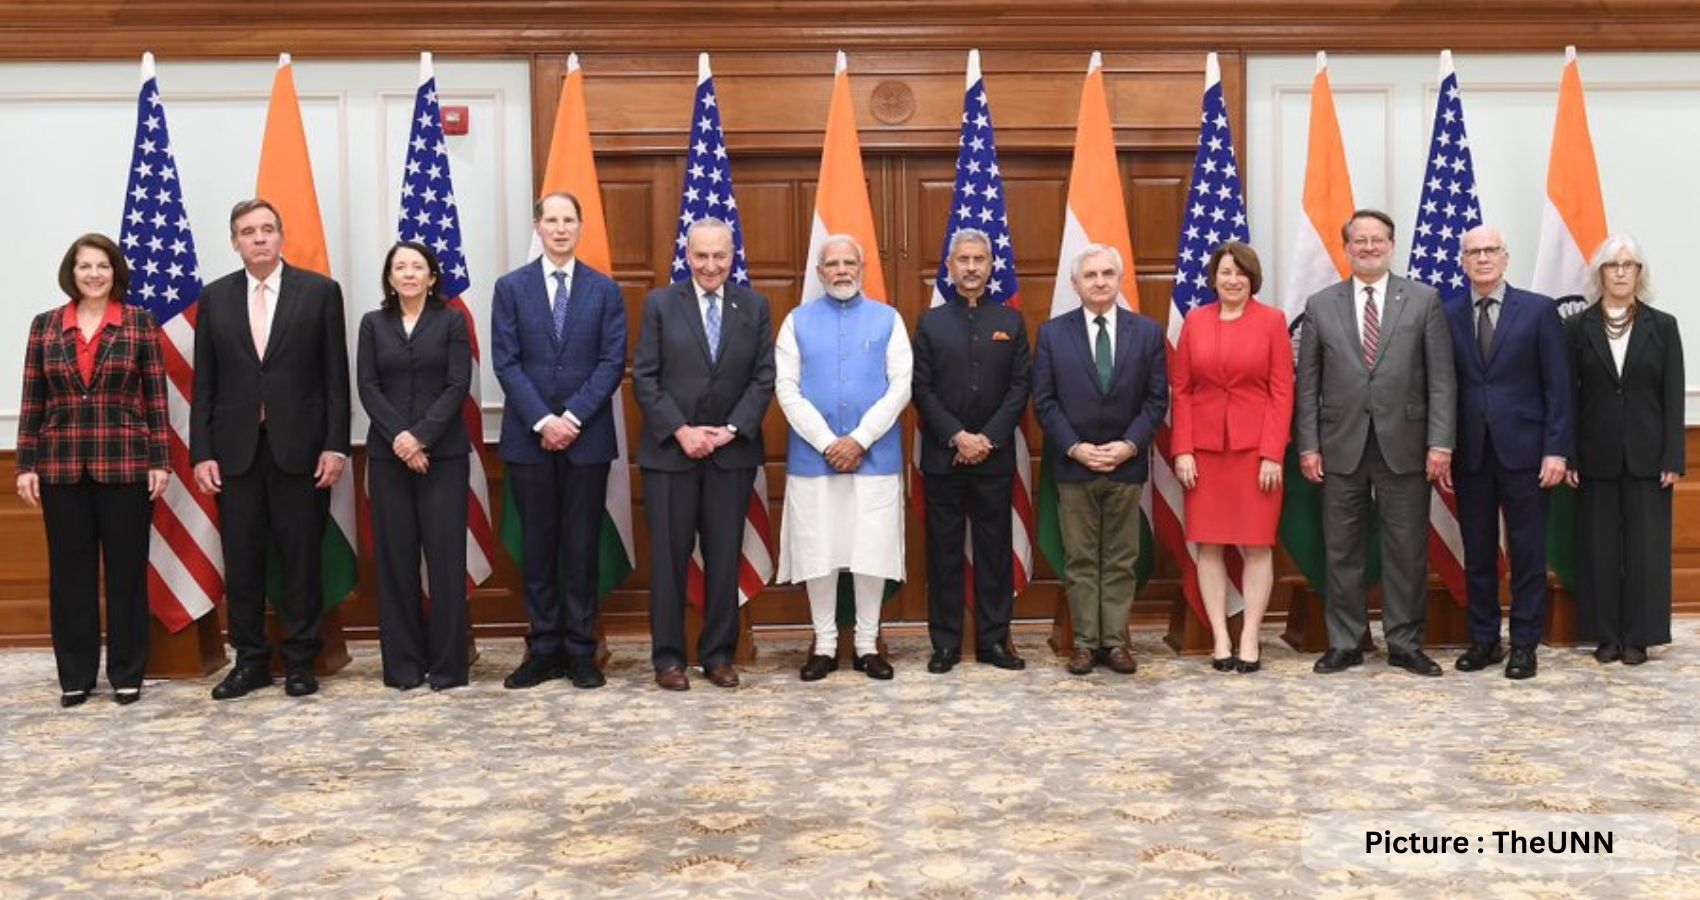 Senator Schumer, Congressional Delegation Meet PM Modi In India